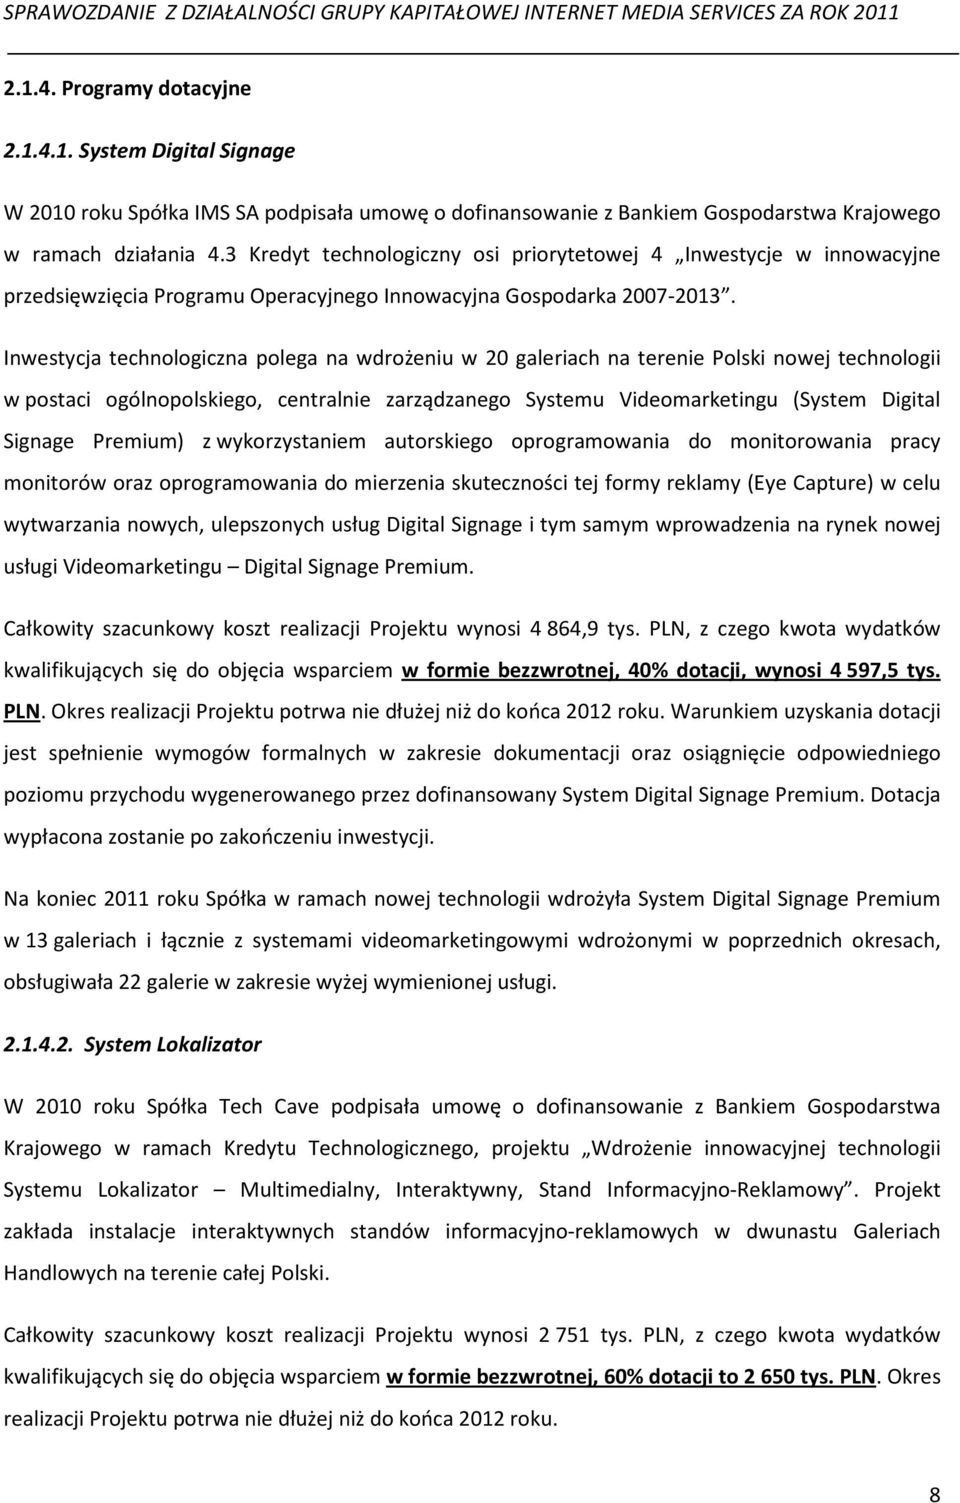 Inwestycja technologiczna polega na wdrożeniu w 20 galeriach na terenie Polski nowej technologii w postaci ogólnopolskiego, centralnie zarządzanego Systemu Videomarketingu (System Digital Signage